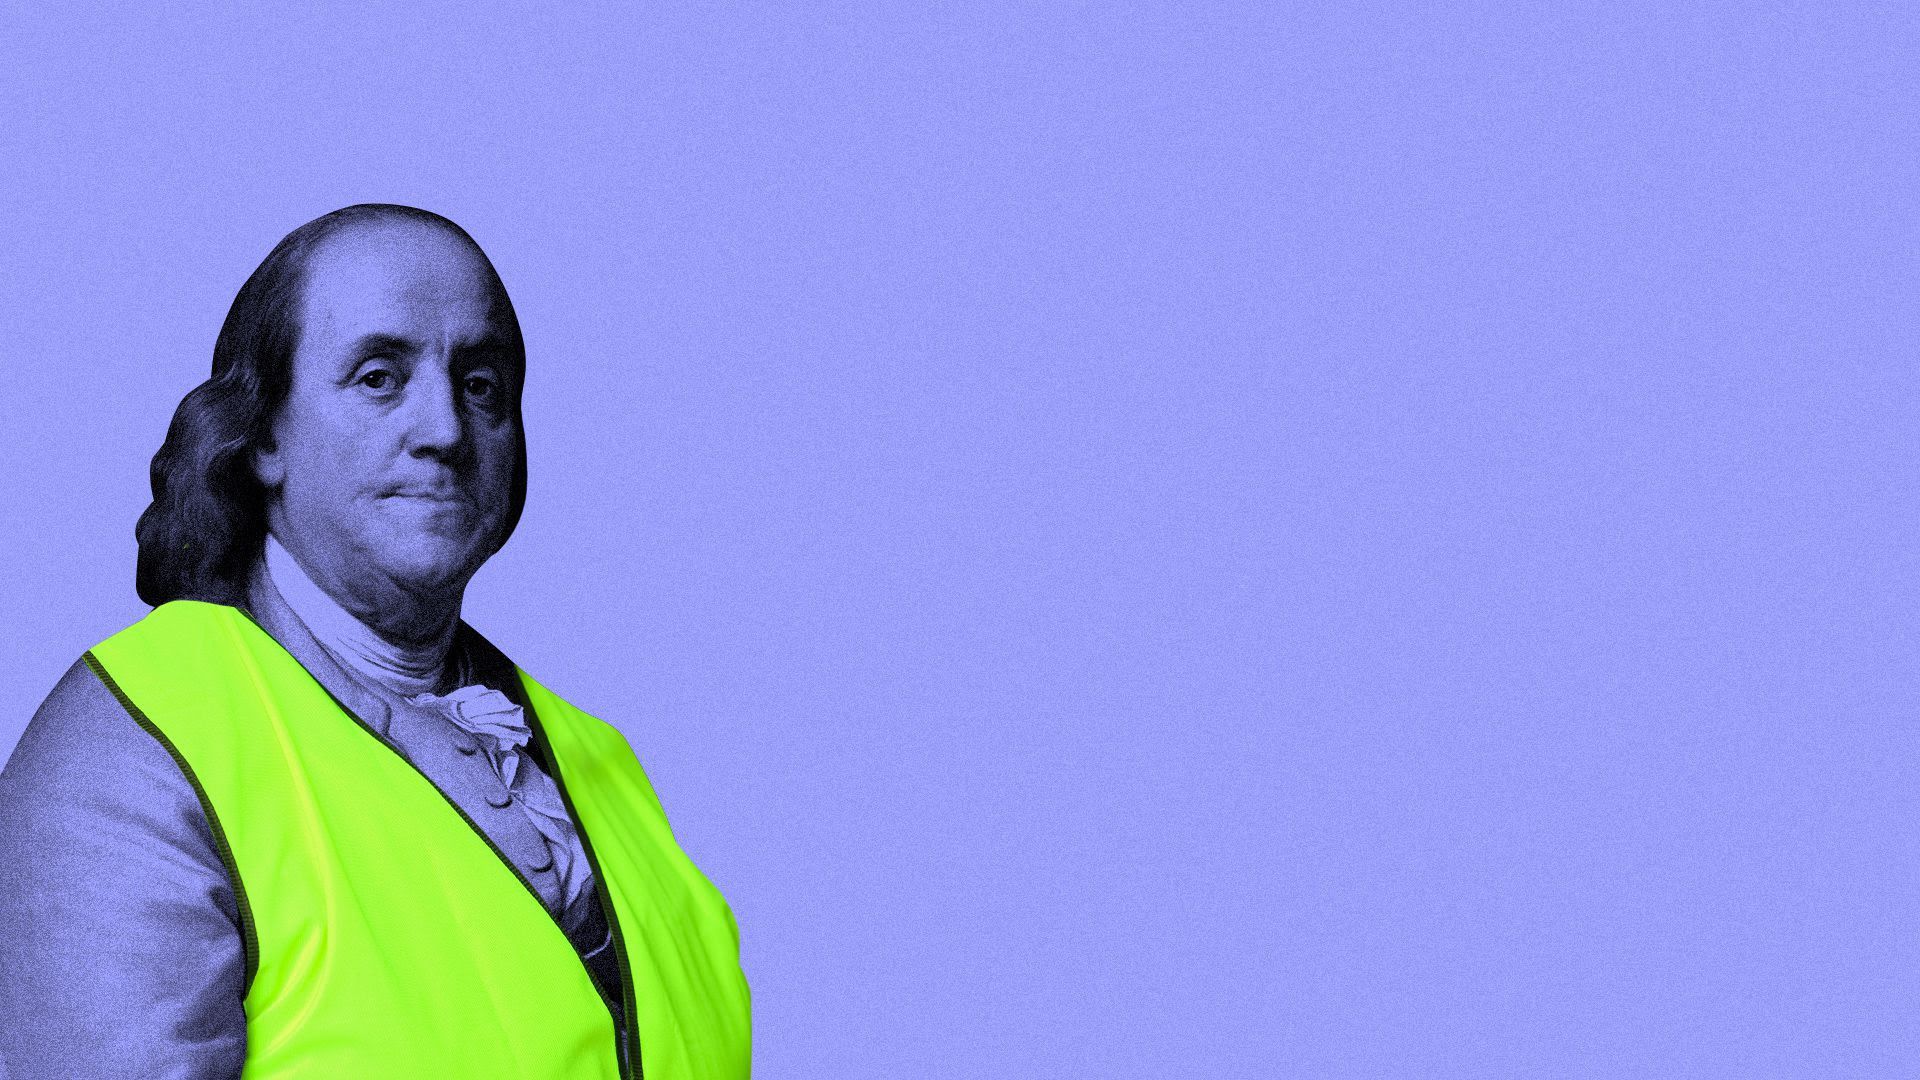 Illustration of Benjamin Franklin wearing a safety vest